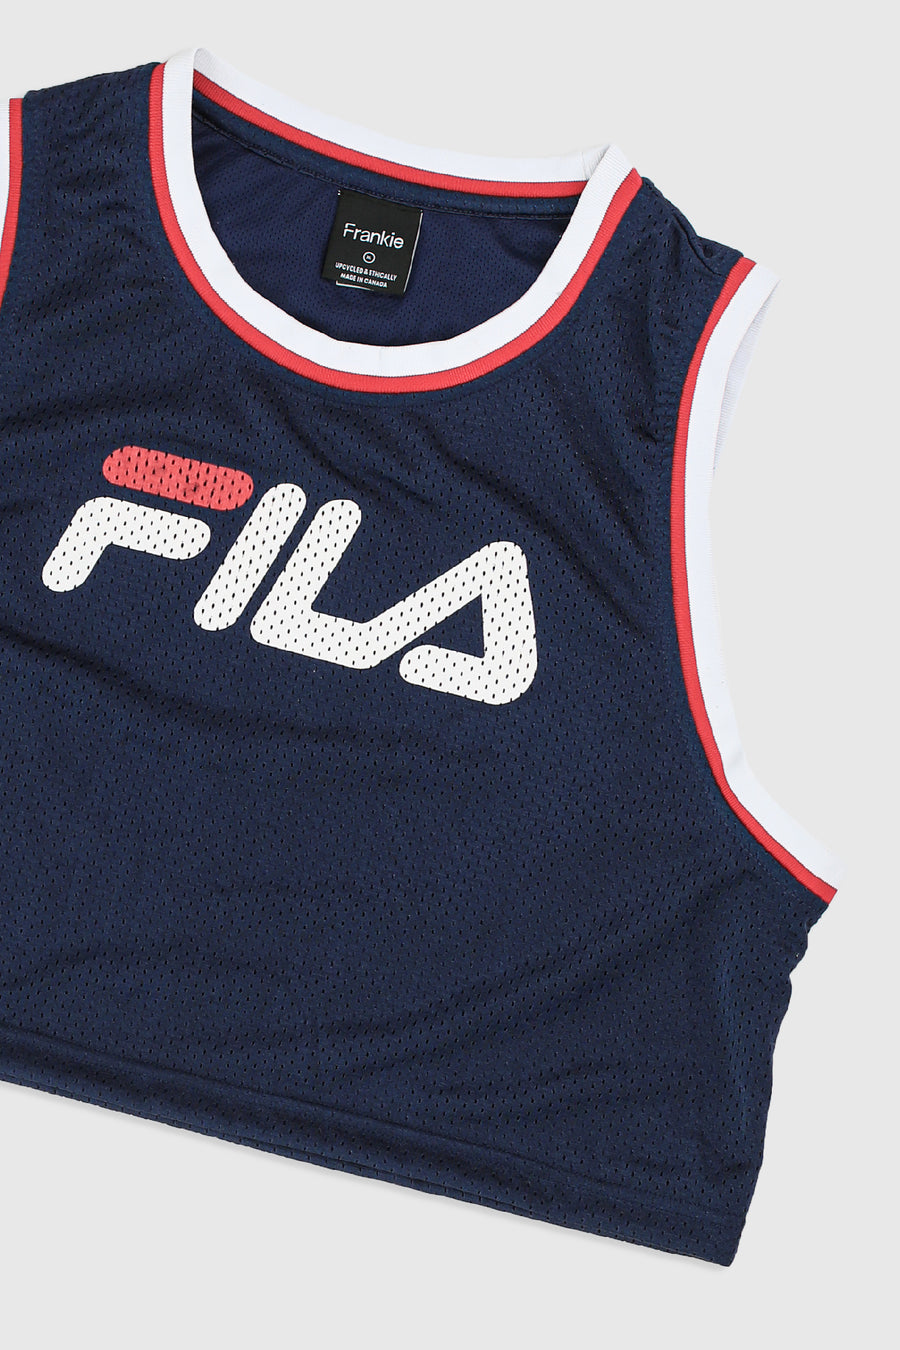 Rework FILA Crop Basketball Jersey - XL